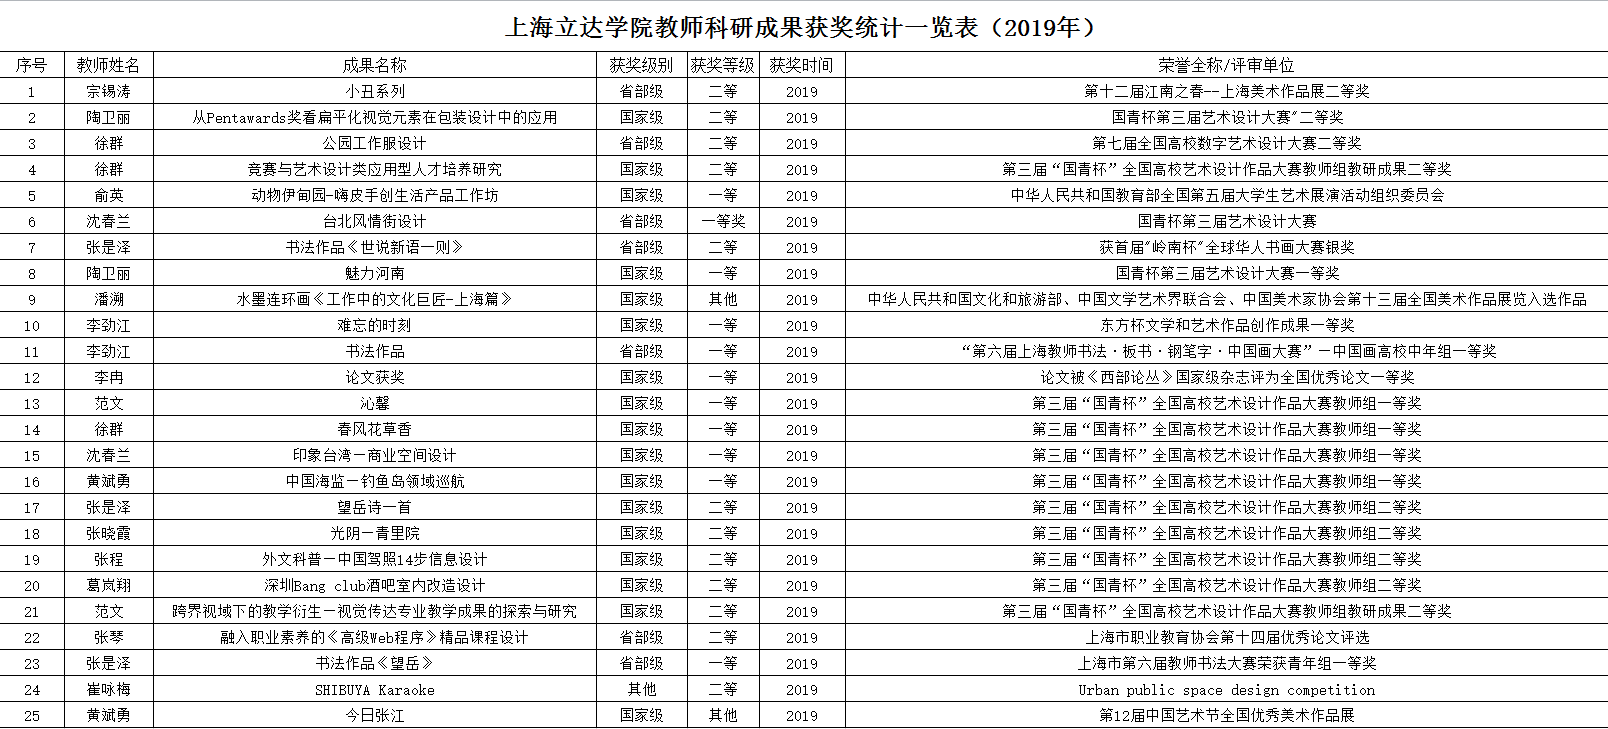 上海立达学院教师科研成果获奖统计一览表（2019年）